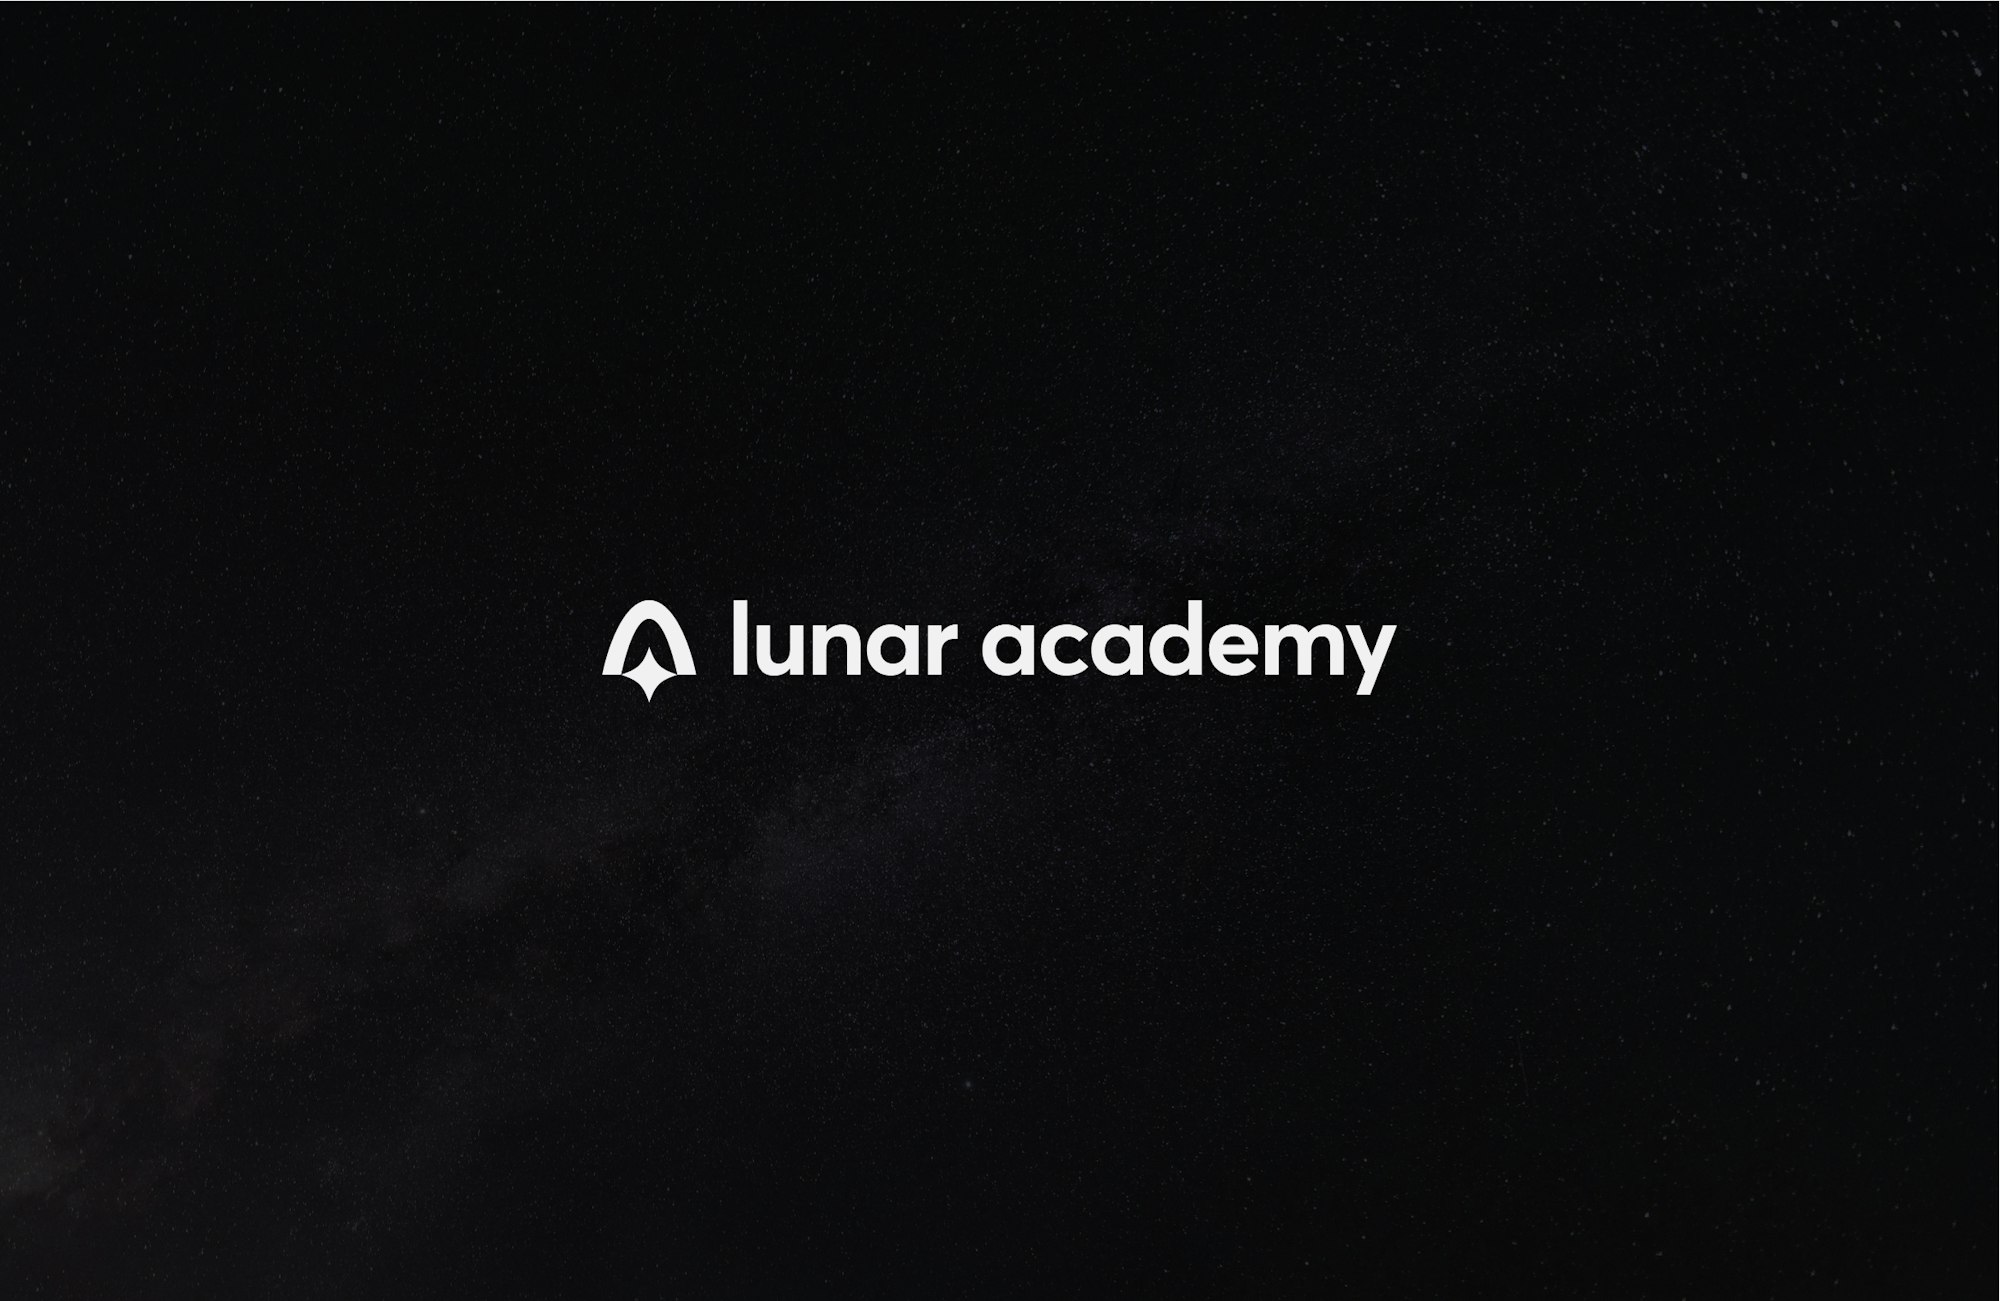 Lunar academy full logo on background